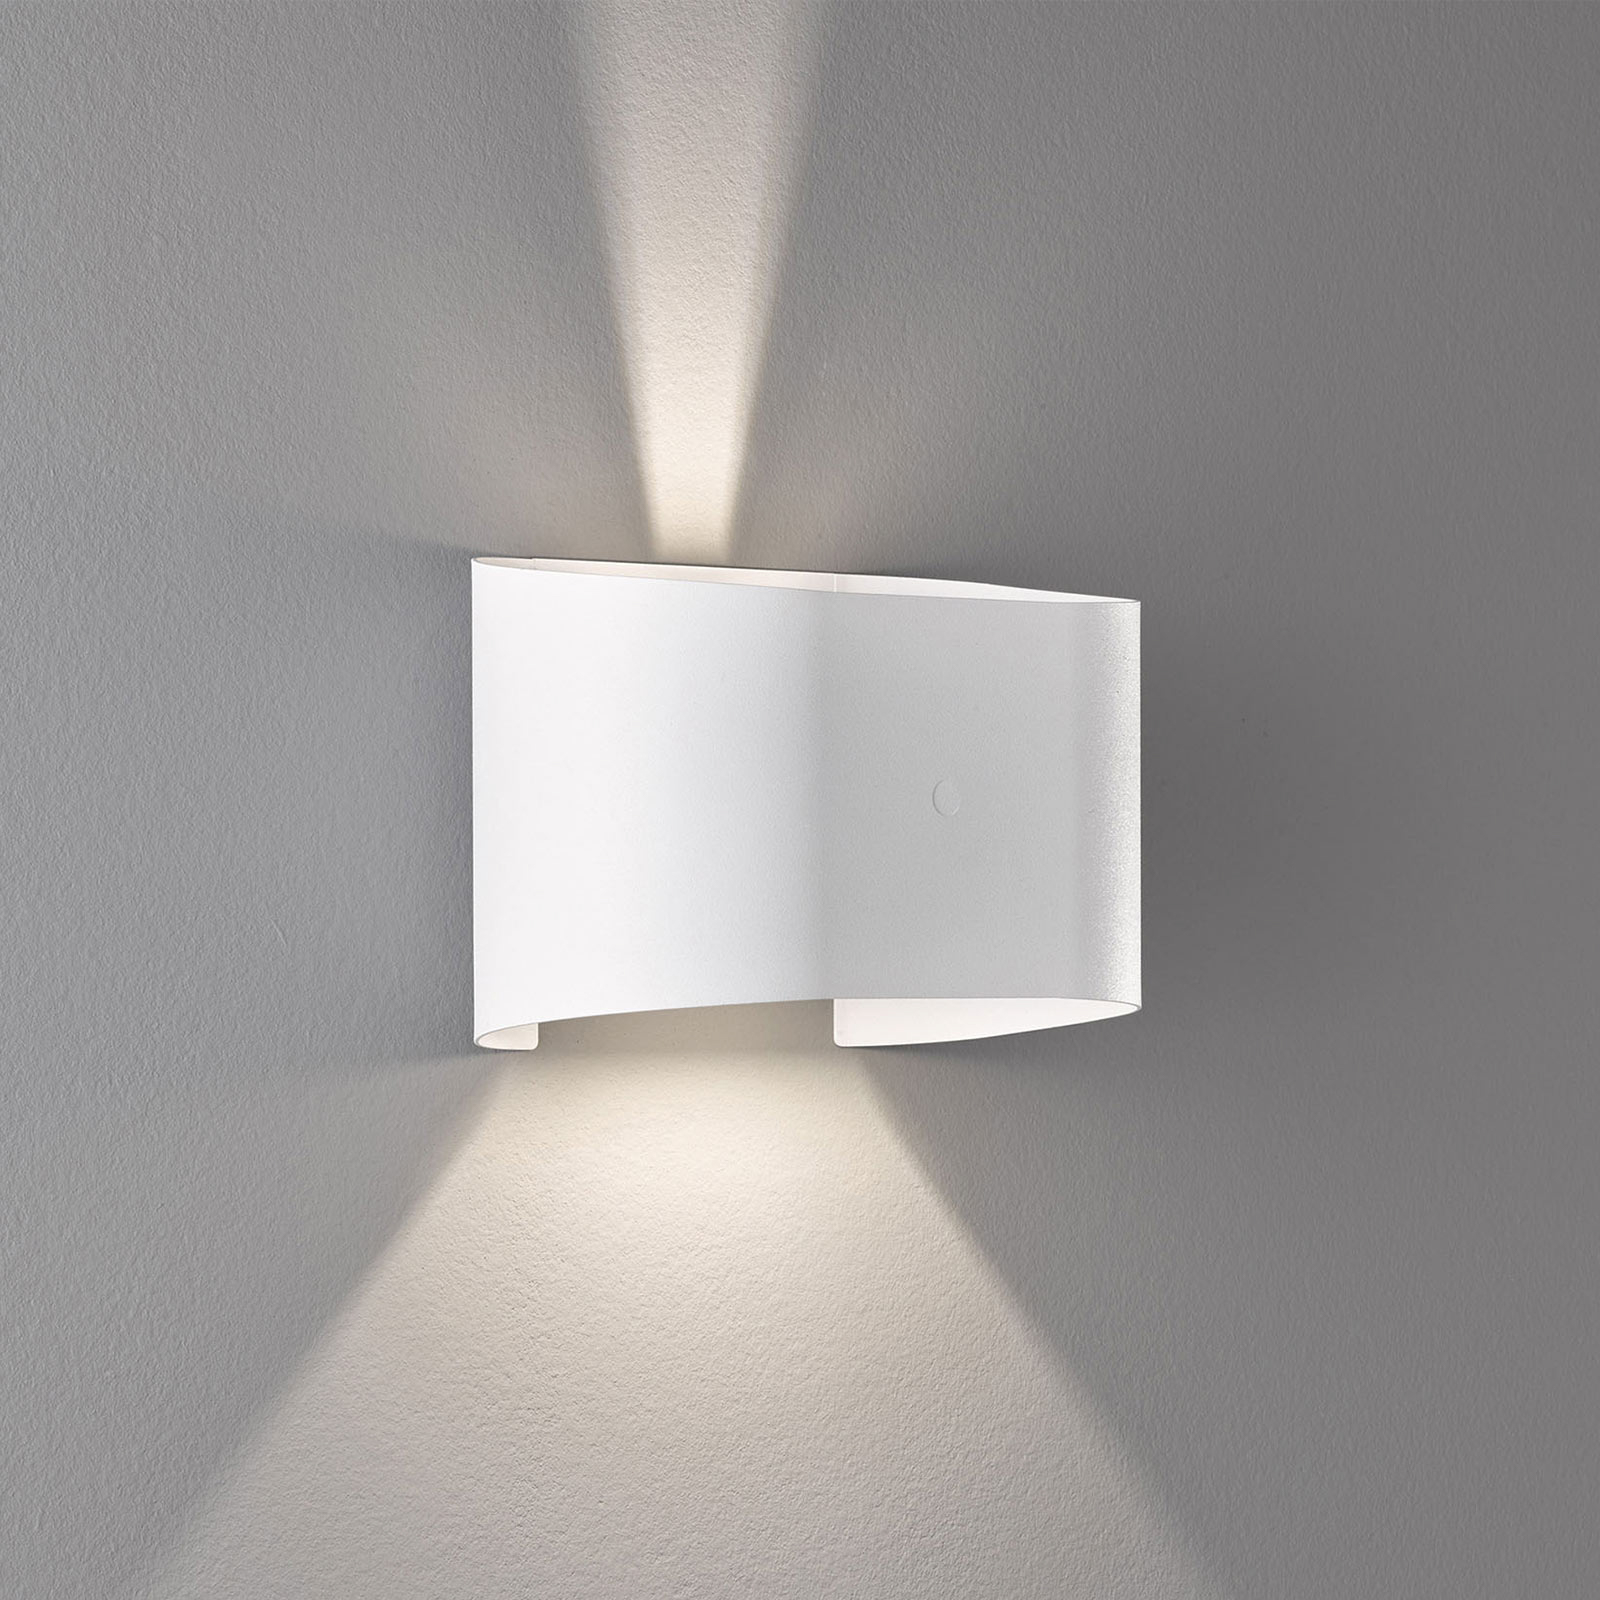 LED-Wandleuchte Wall, zweiflammig, rund, weiß